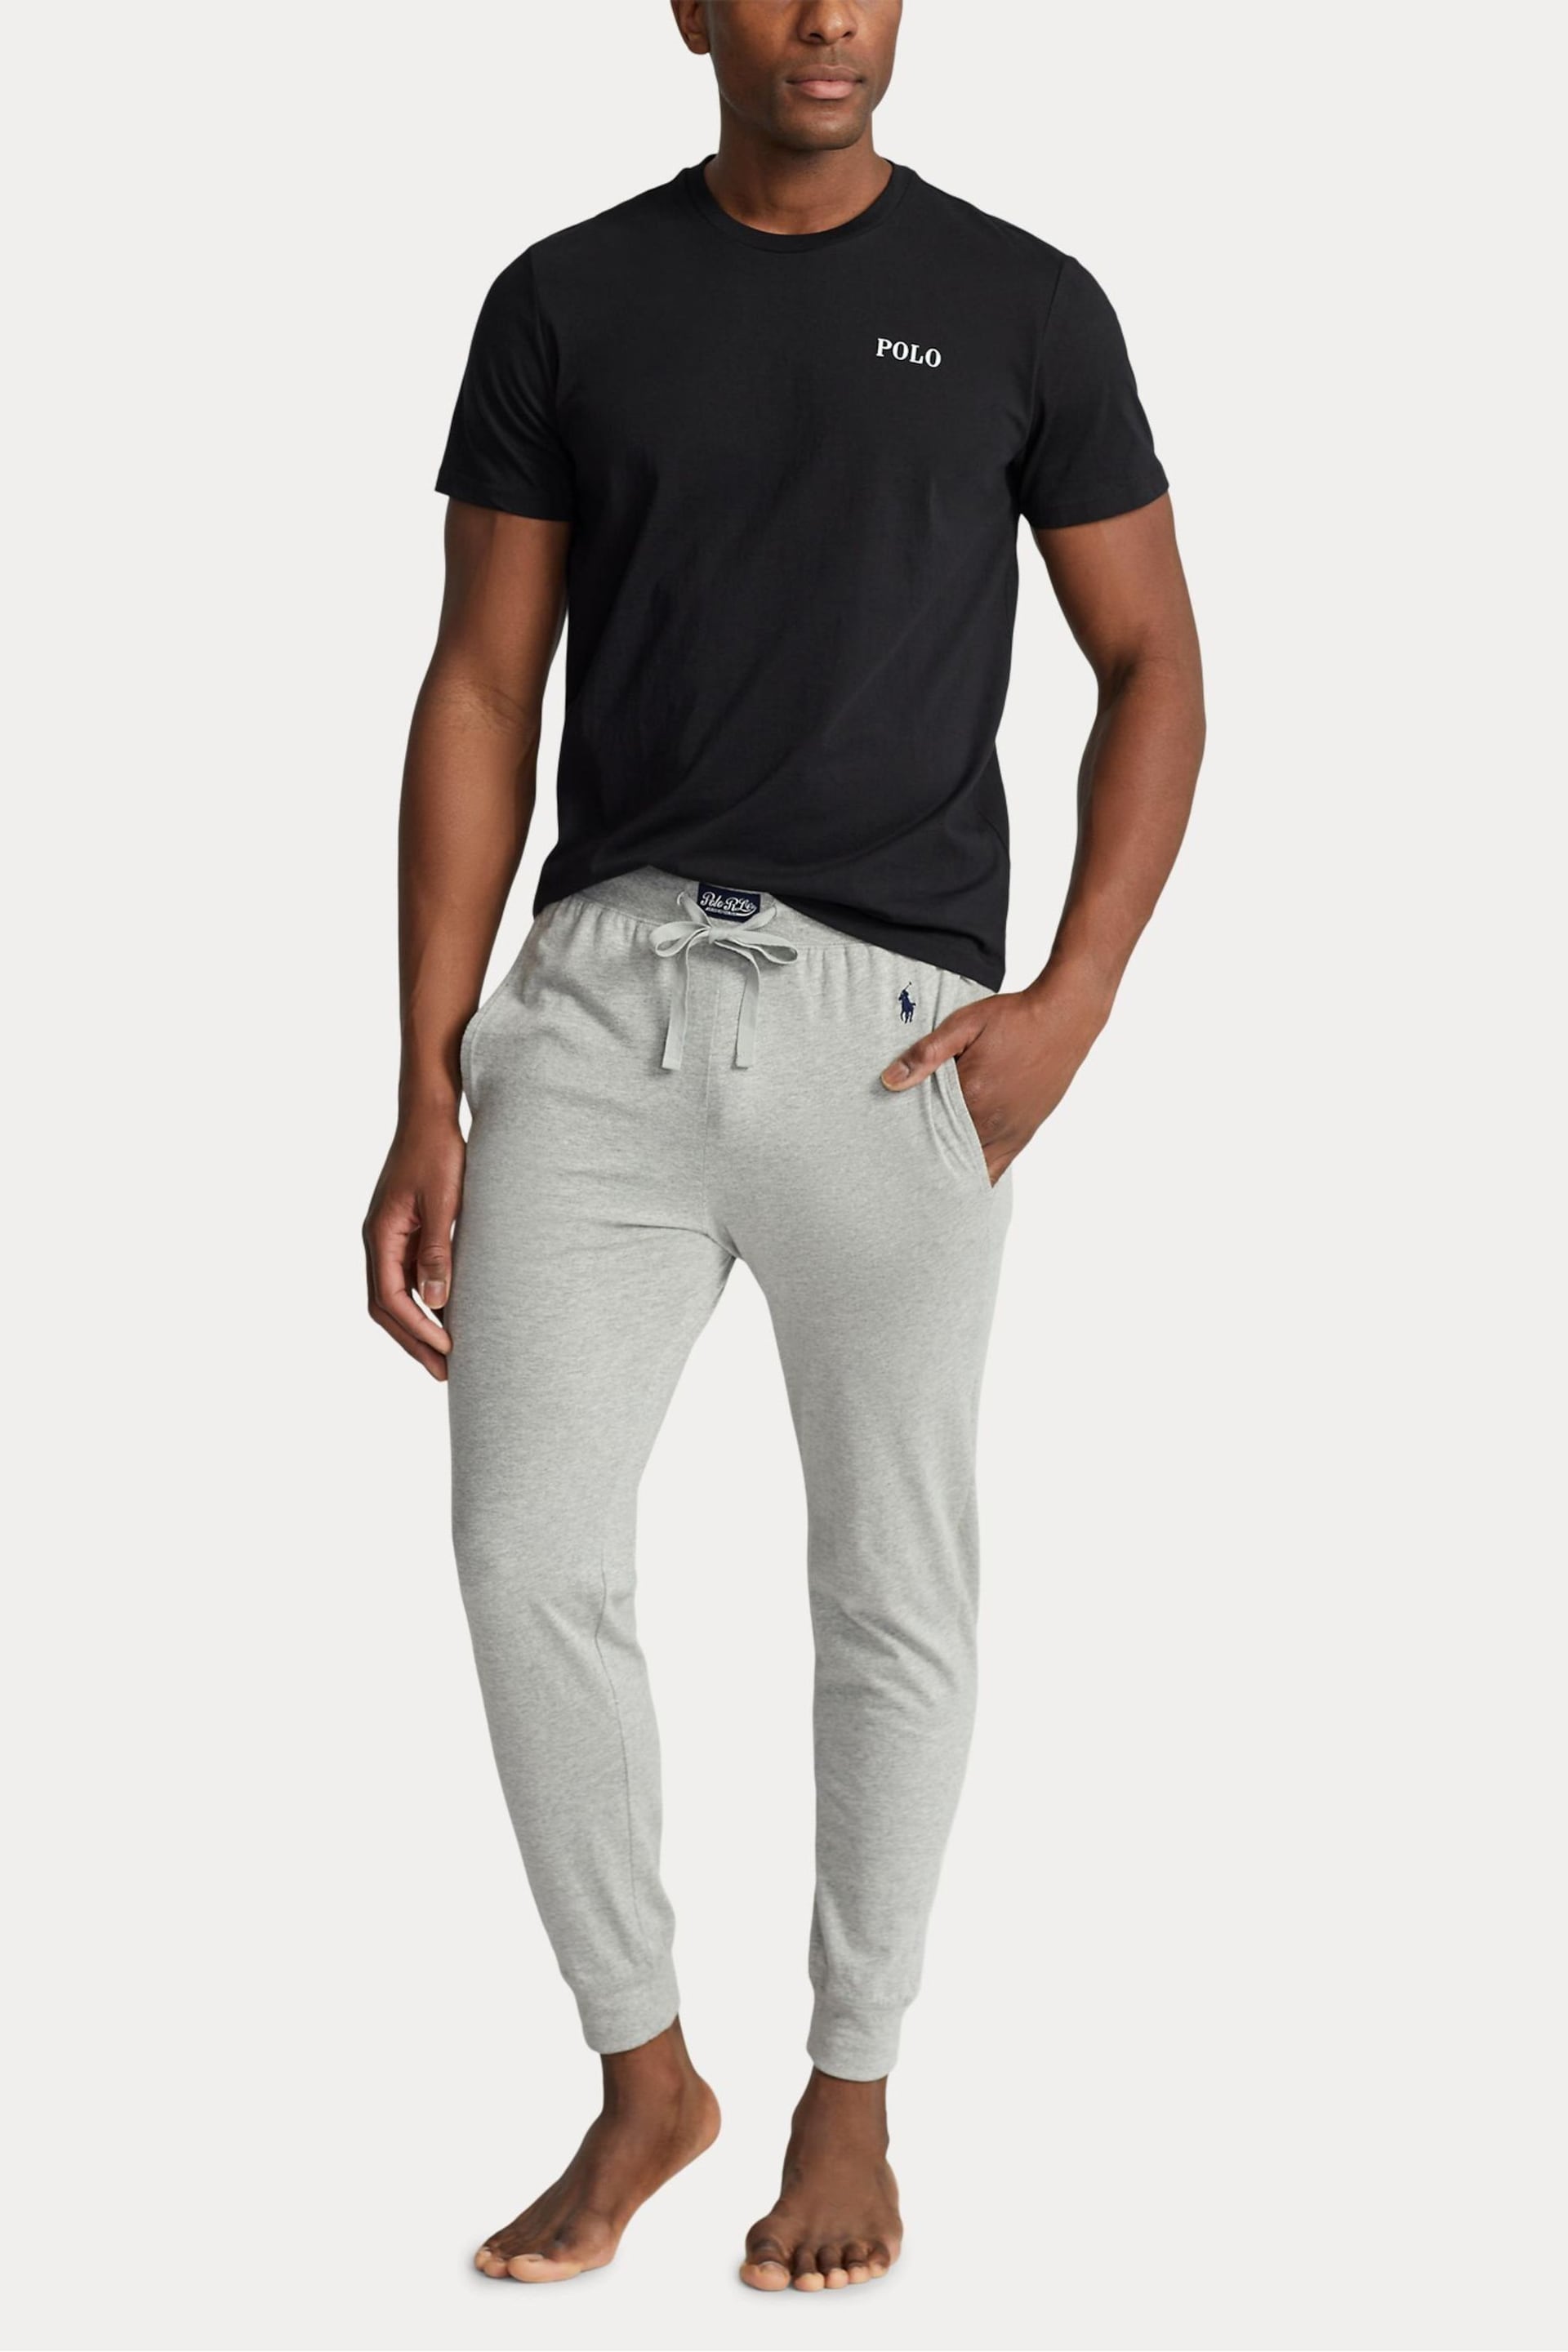 Polo Ralph Lauren Cotton Jersey Short Sleeve Logo T-Shirt - Image 3 of 4